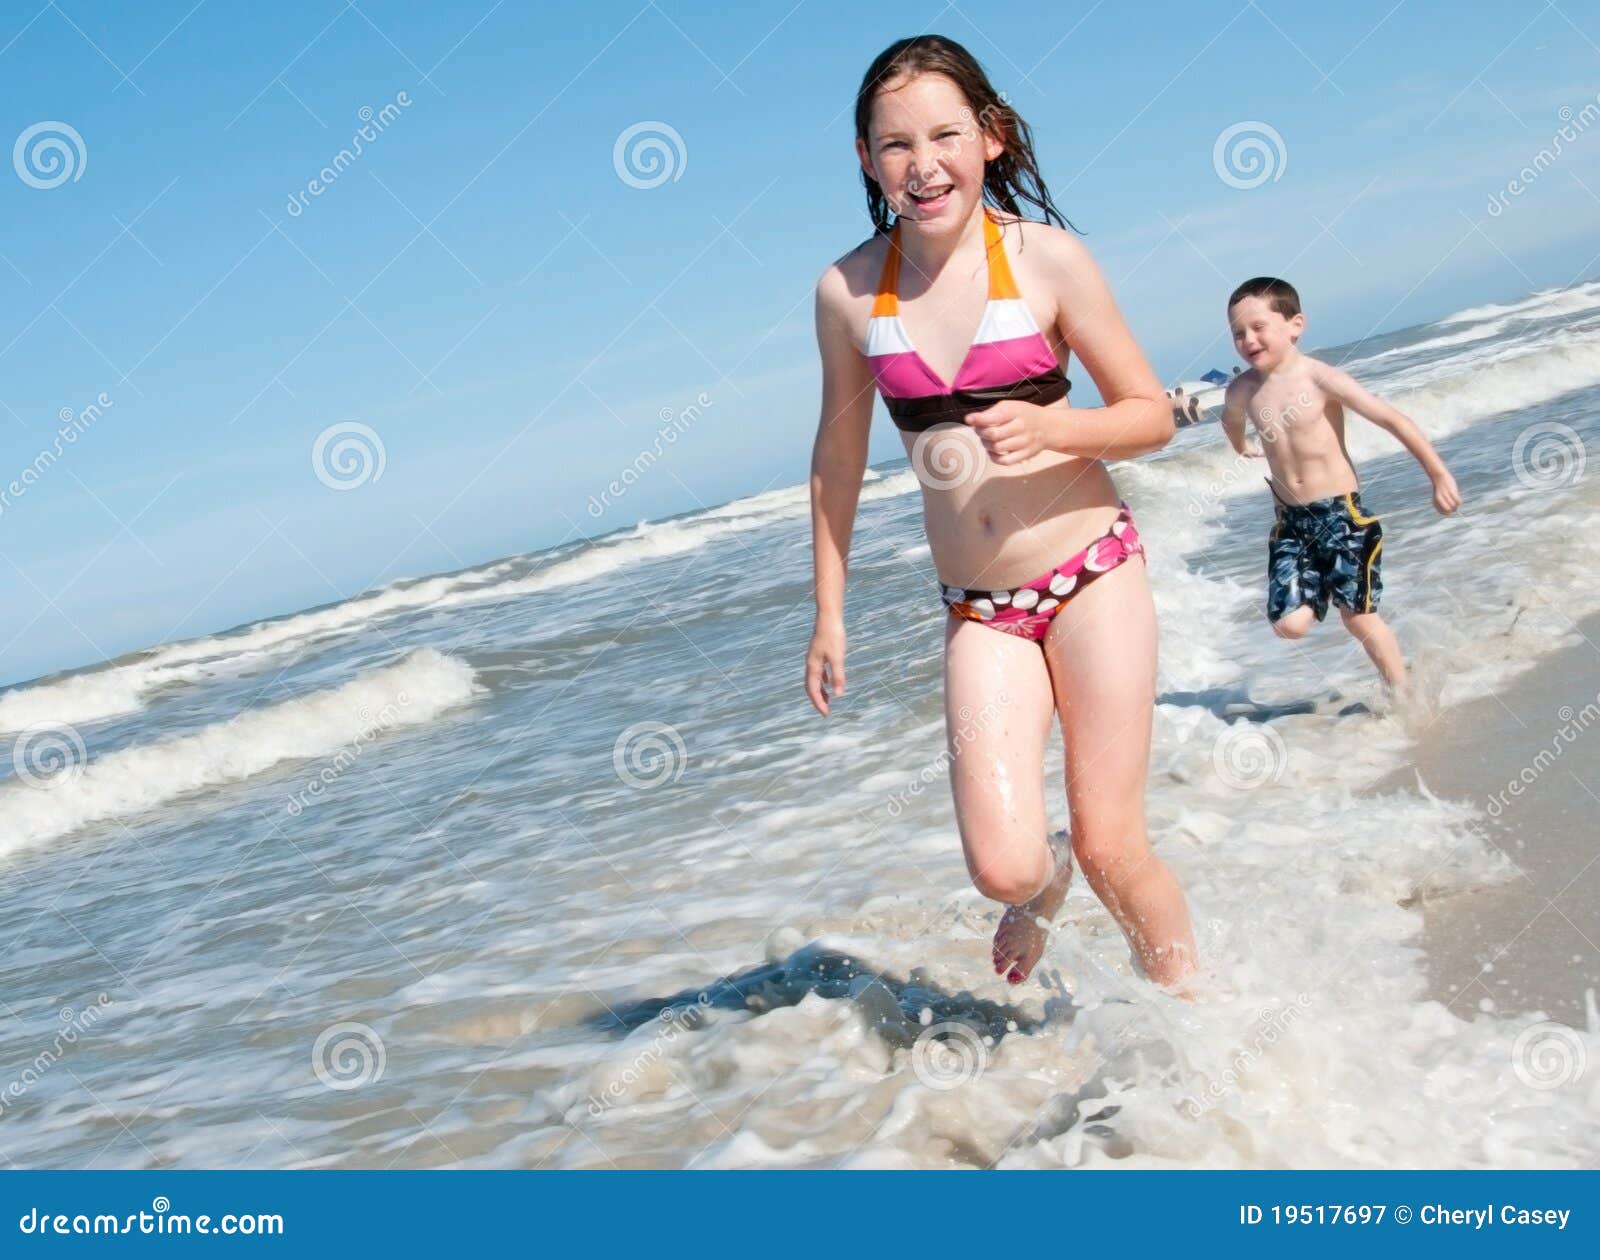 фото детей на голом пляже фото 117